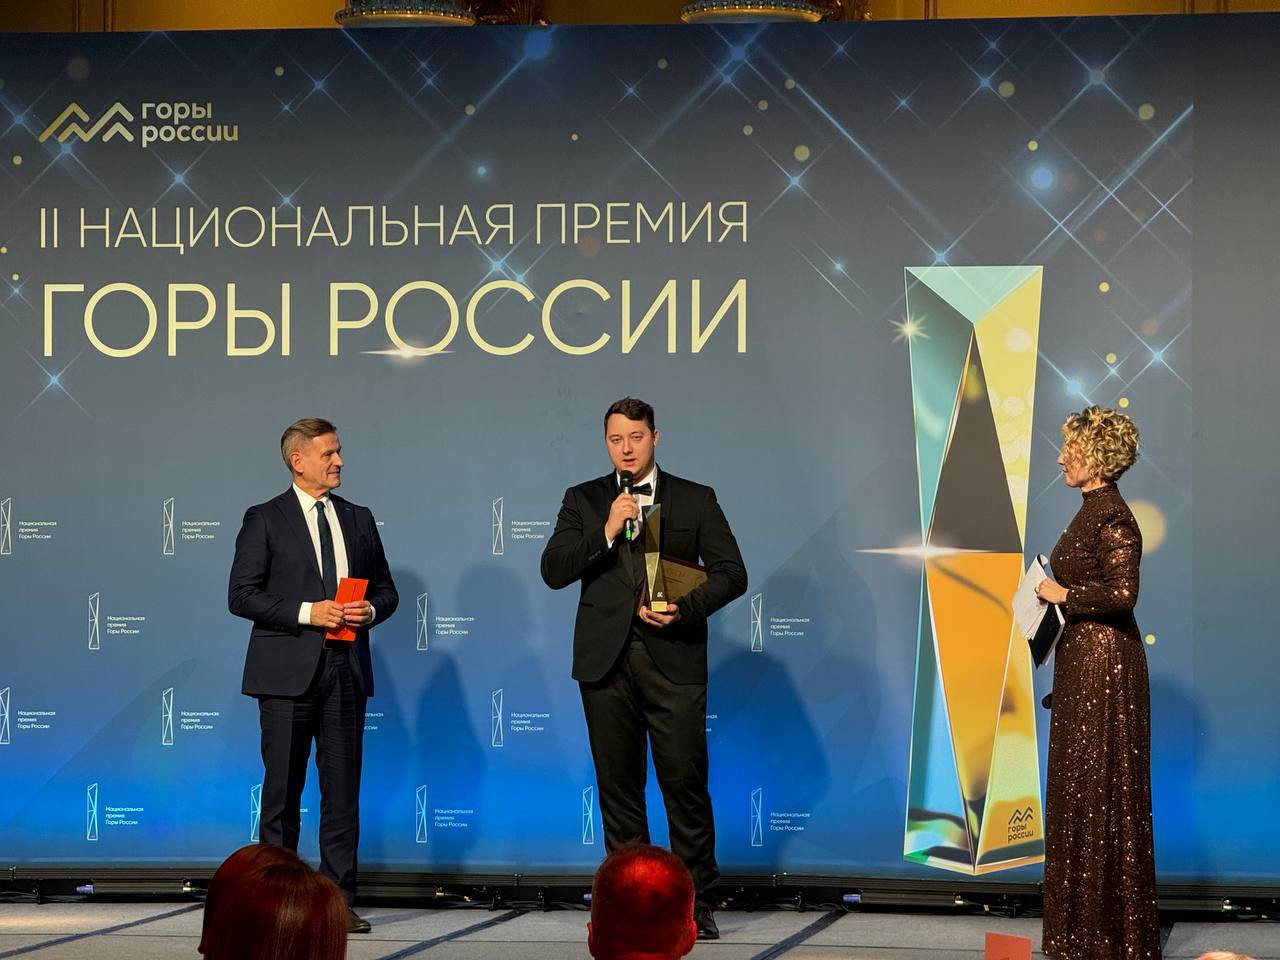 Курорт «Большой Вудъявр» одержал победу в номинации «Лучший курорт в черте города» II Национальной премии «Горы России»